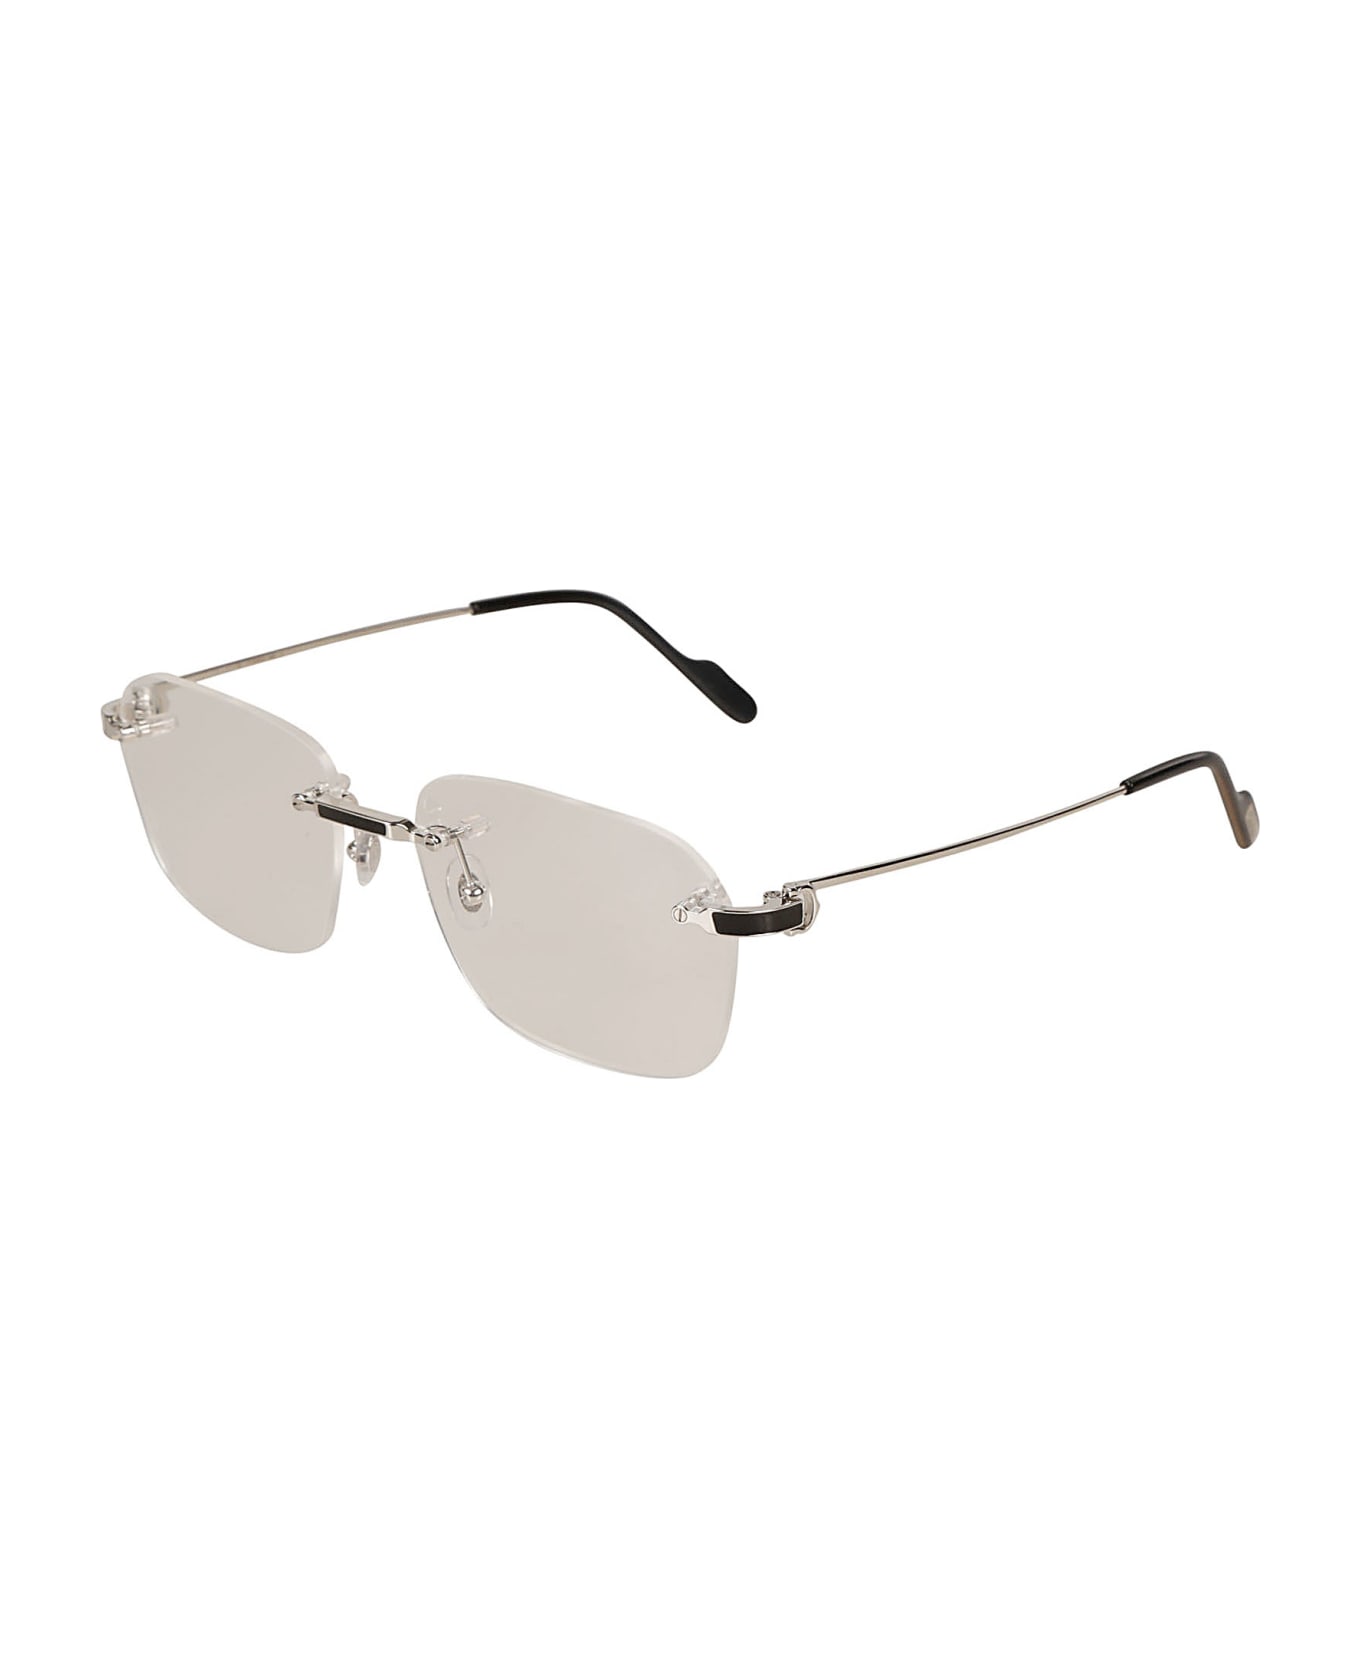 Cartier Eyewear Clear Frameless Sunglasses Sunglasses - Silver